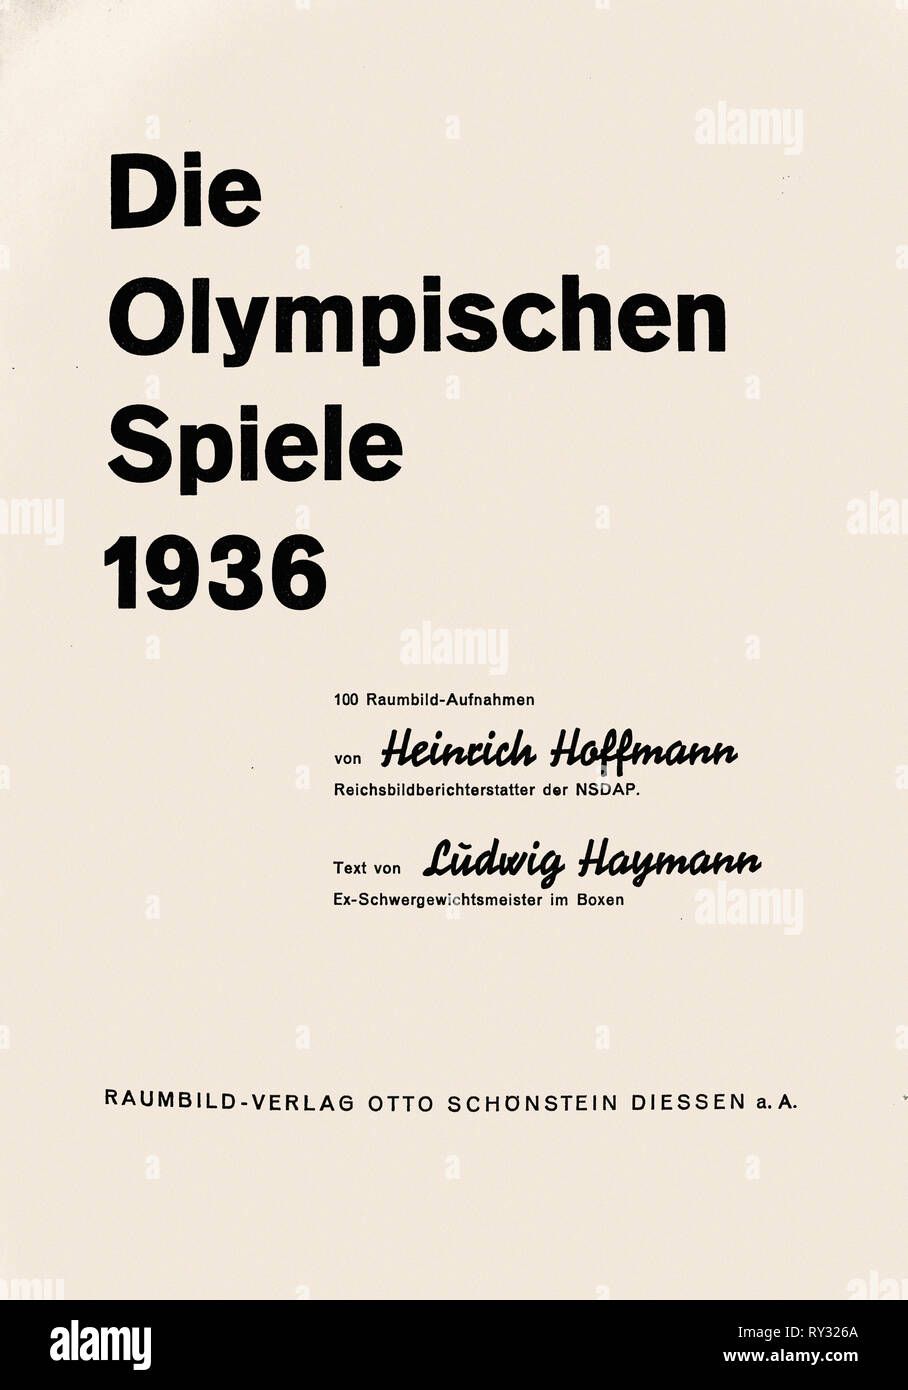 Olympischen Spielen 1936 Berlin - Titelseite die Olympischen Spiele 1936 von Heinrich Hoffmann Fotografie Ludwig Haymann Text Raumbild Verlag 1936 Stockfoto